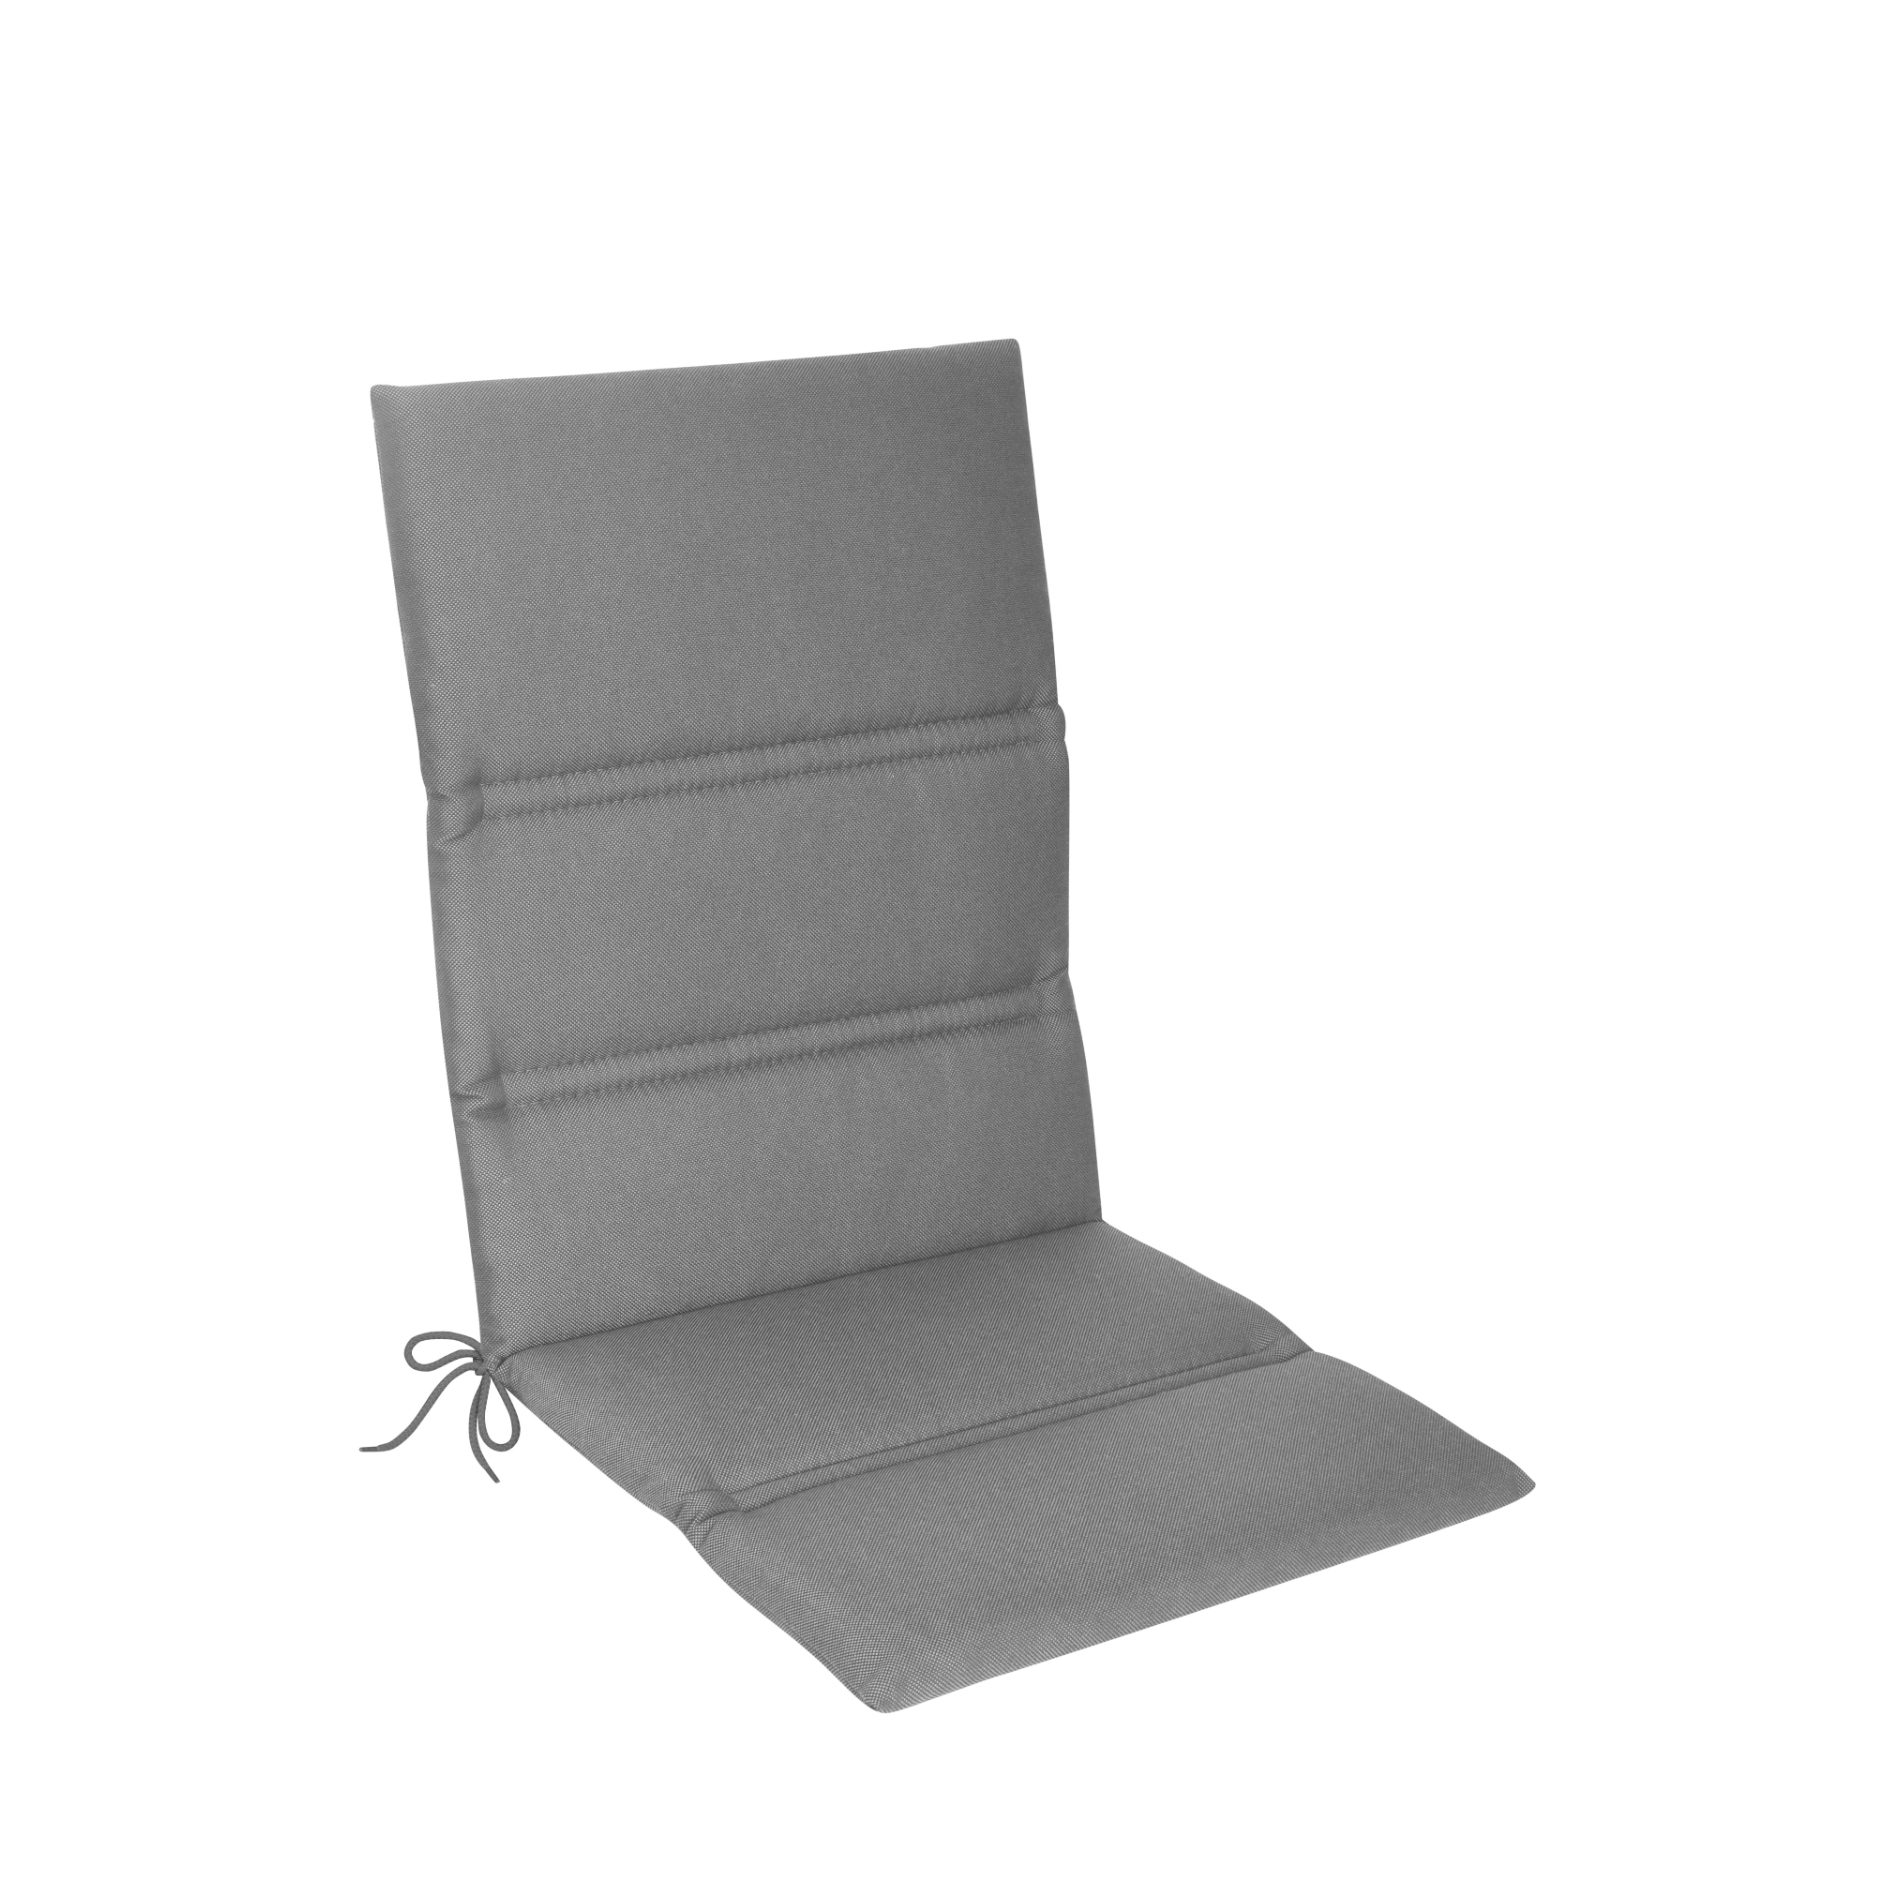 KETTtex Auflage für Gartenstuhl/Stapelstuhl mit etwas höherer Rückenlehne, 110x48 cm, anthrazit